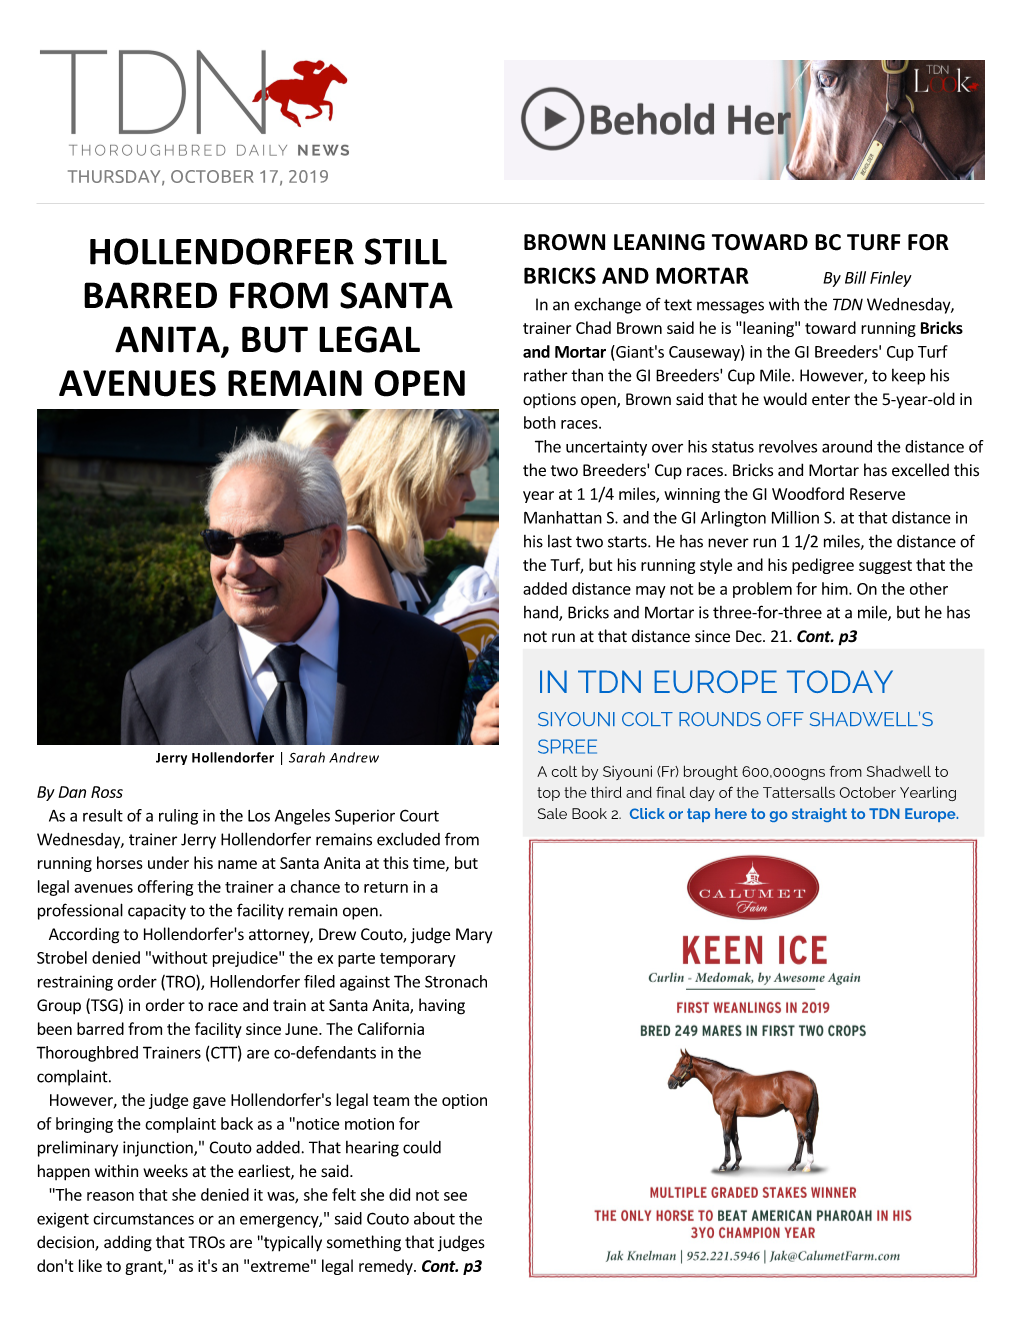 Hollendorfer Still Barred from Santa Anita, but Legal